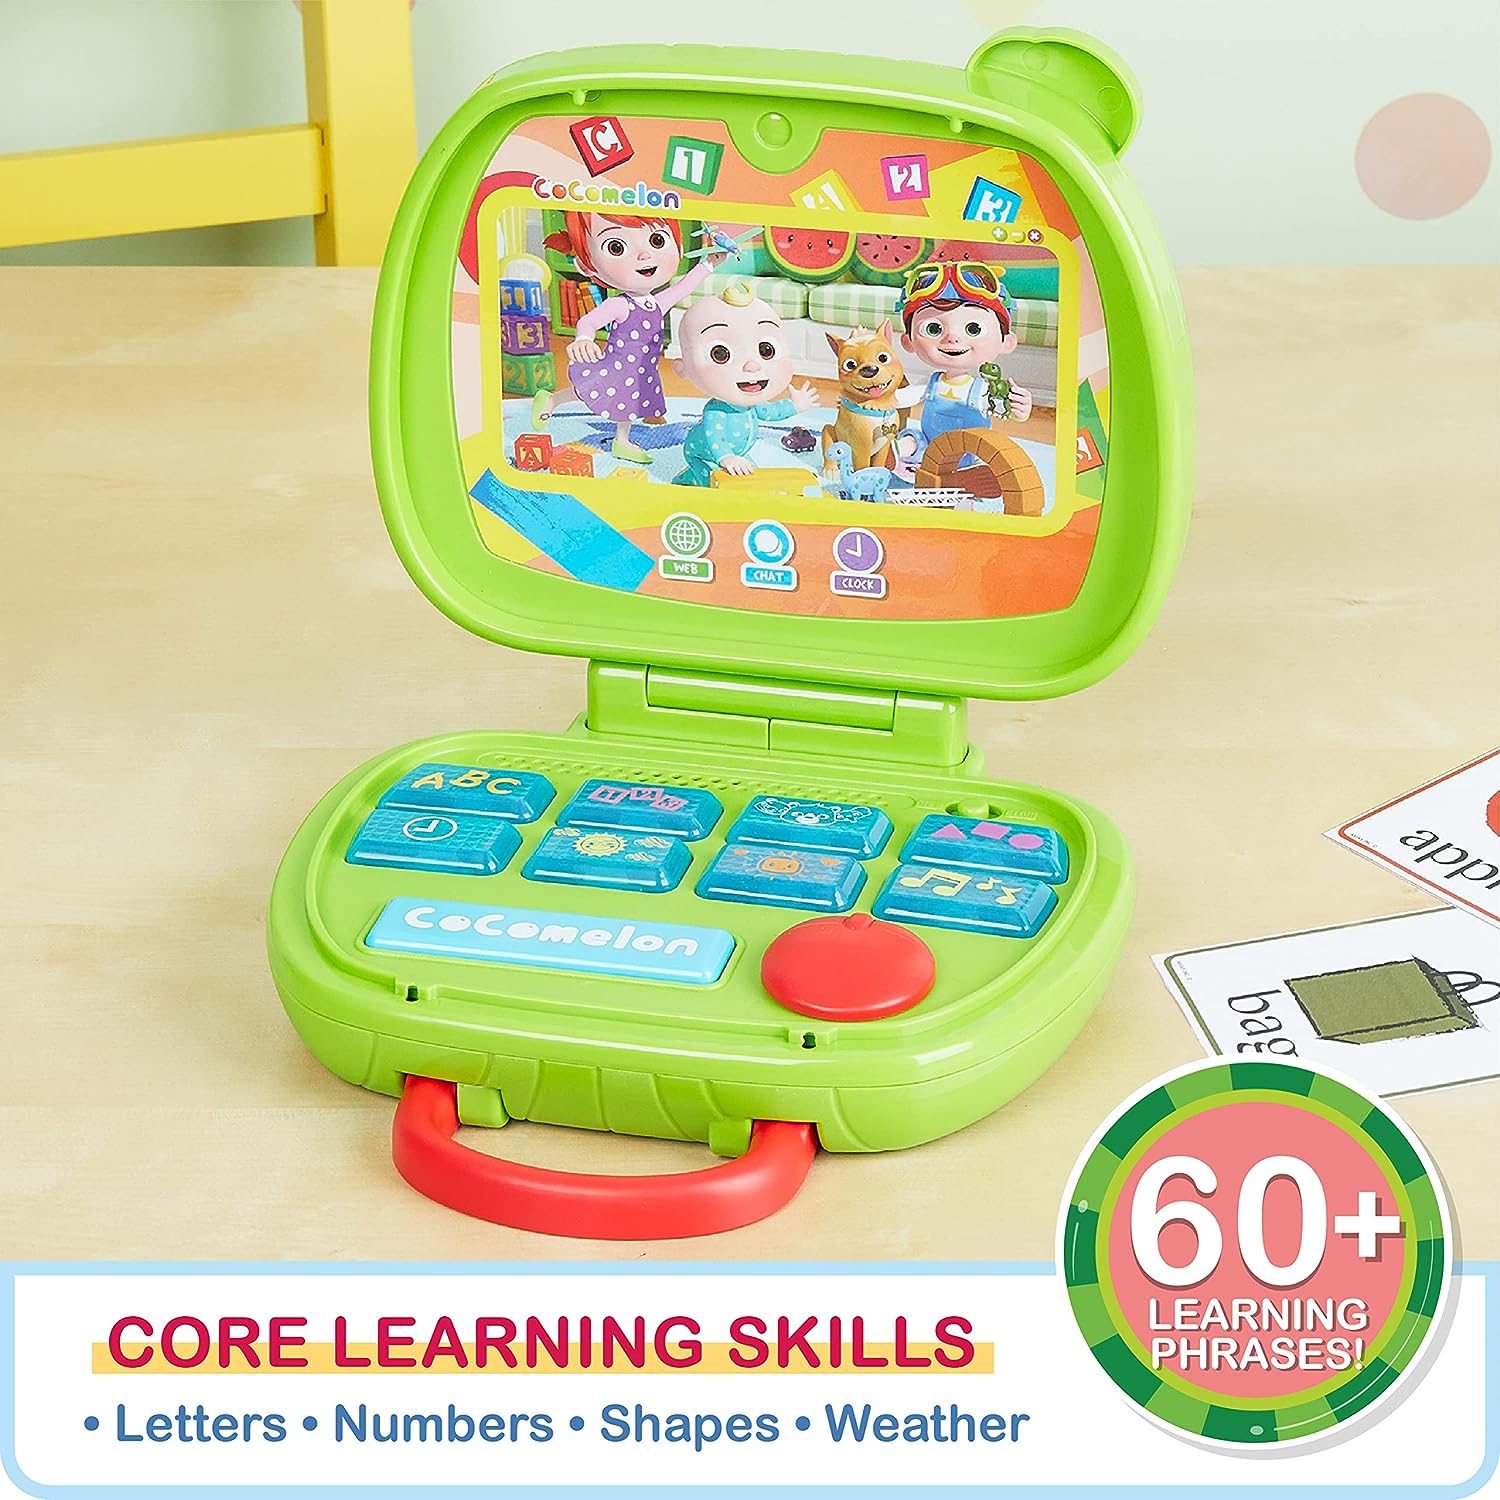 لعبة كمبيوتر محمول CoComelon تغني وتعلم للأطفال والأضواء والأصوات والموسيقى تشجع على الحروف والأرقام والشكل والتعرف على الحيوانات